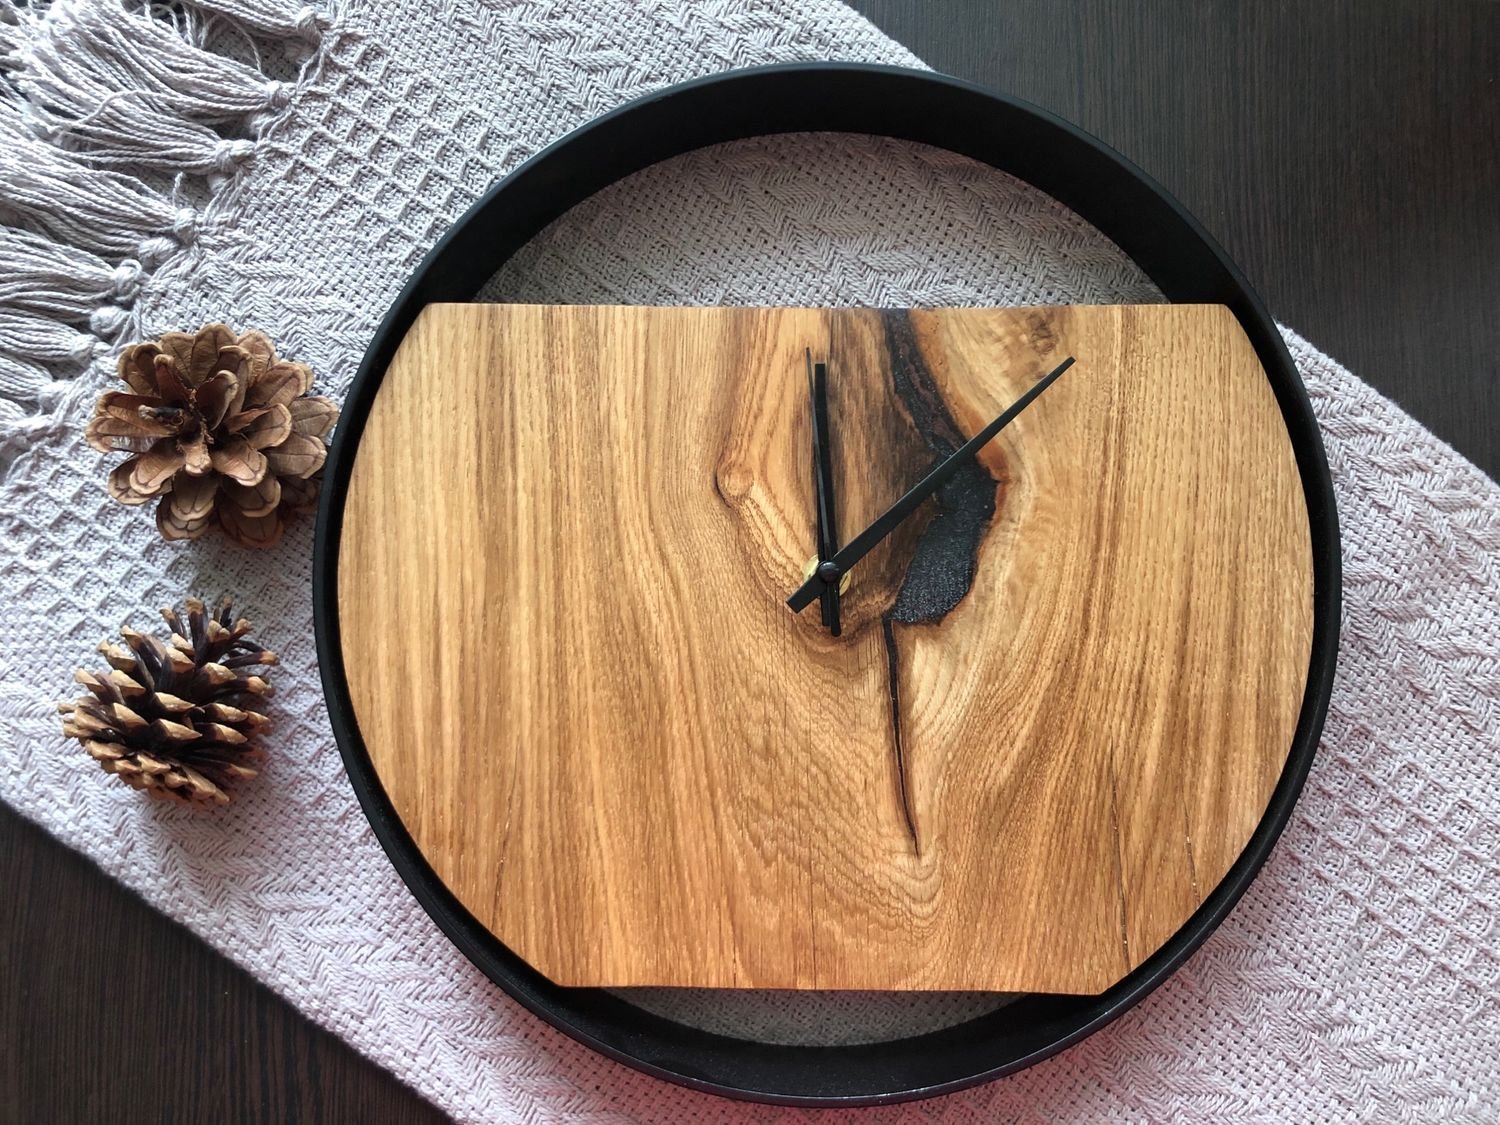 Часы сделанные полностью из дерева